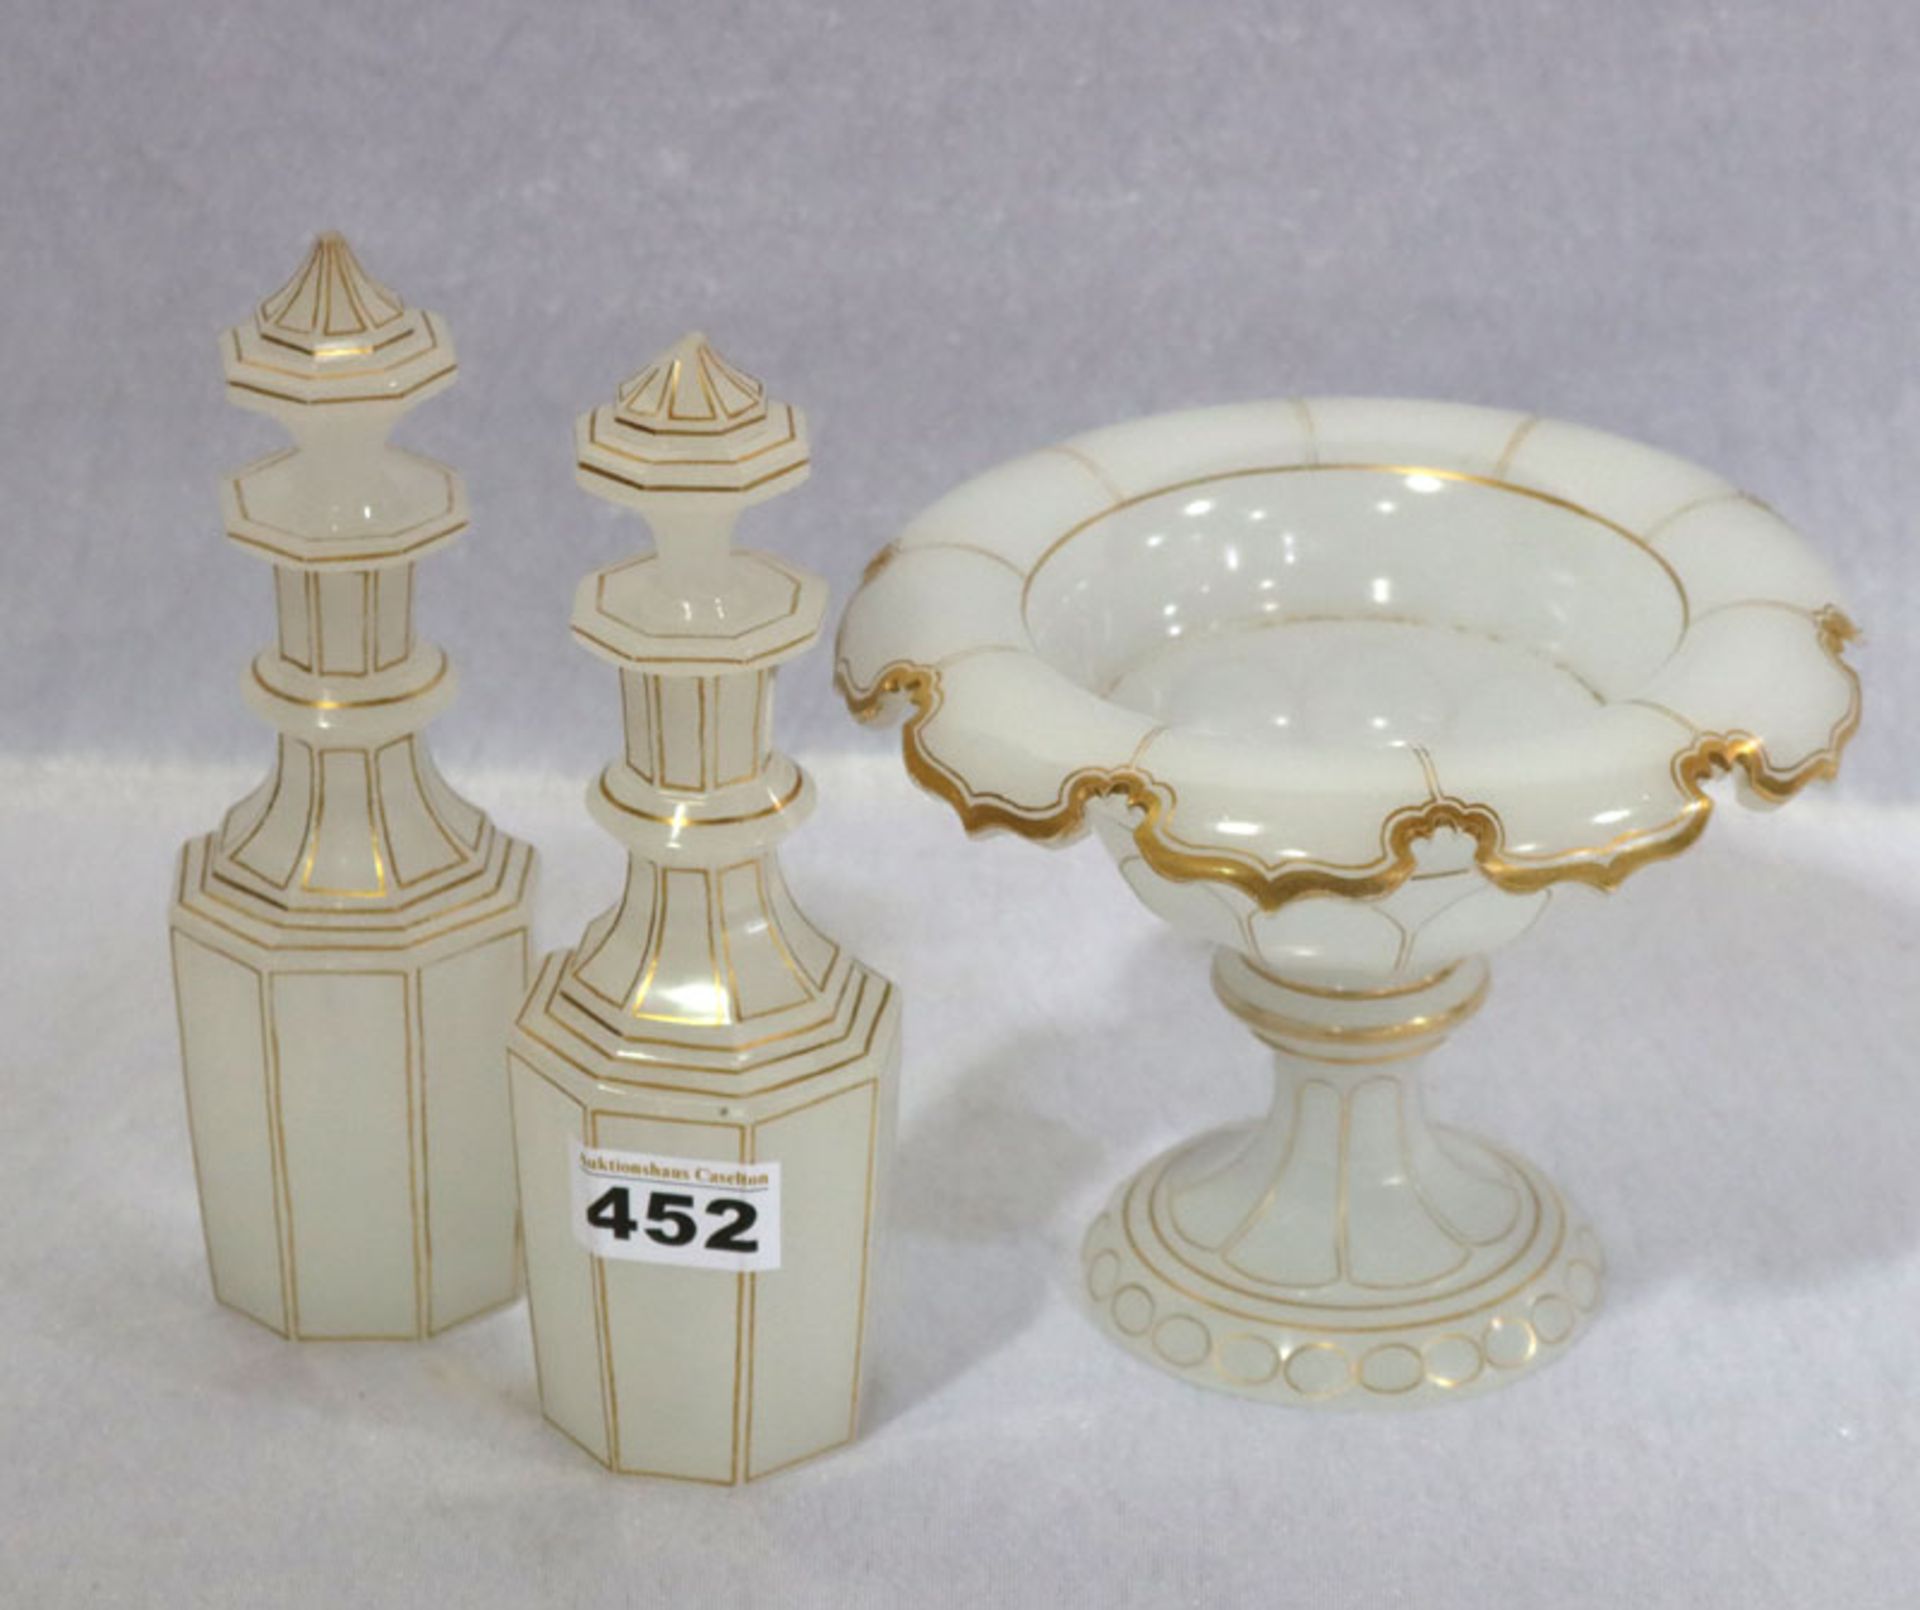 Milchglas Set: Fußschale, H 14 cm, D 18 cm, und 2 Karaffen, H 20 cm, D 8 cm, leicht bestossen, alles